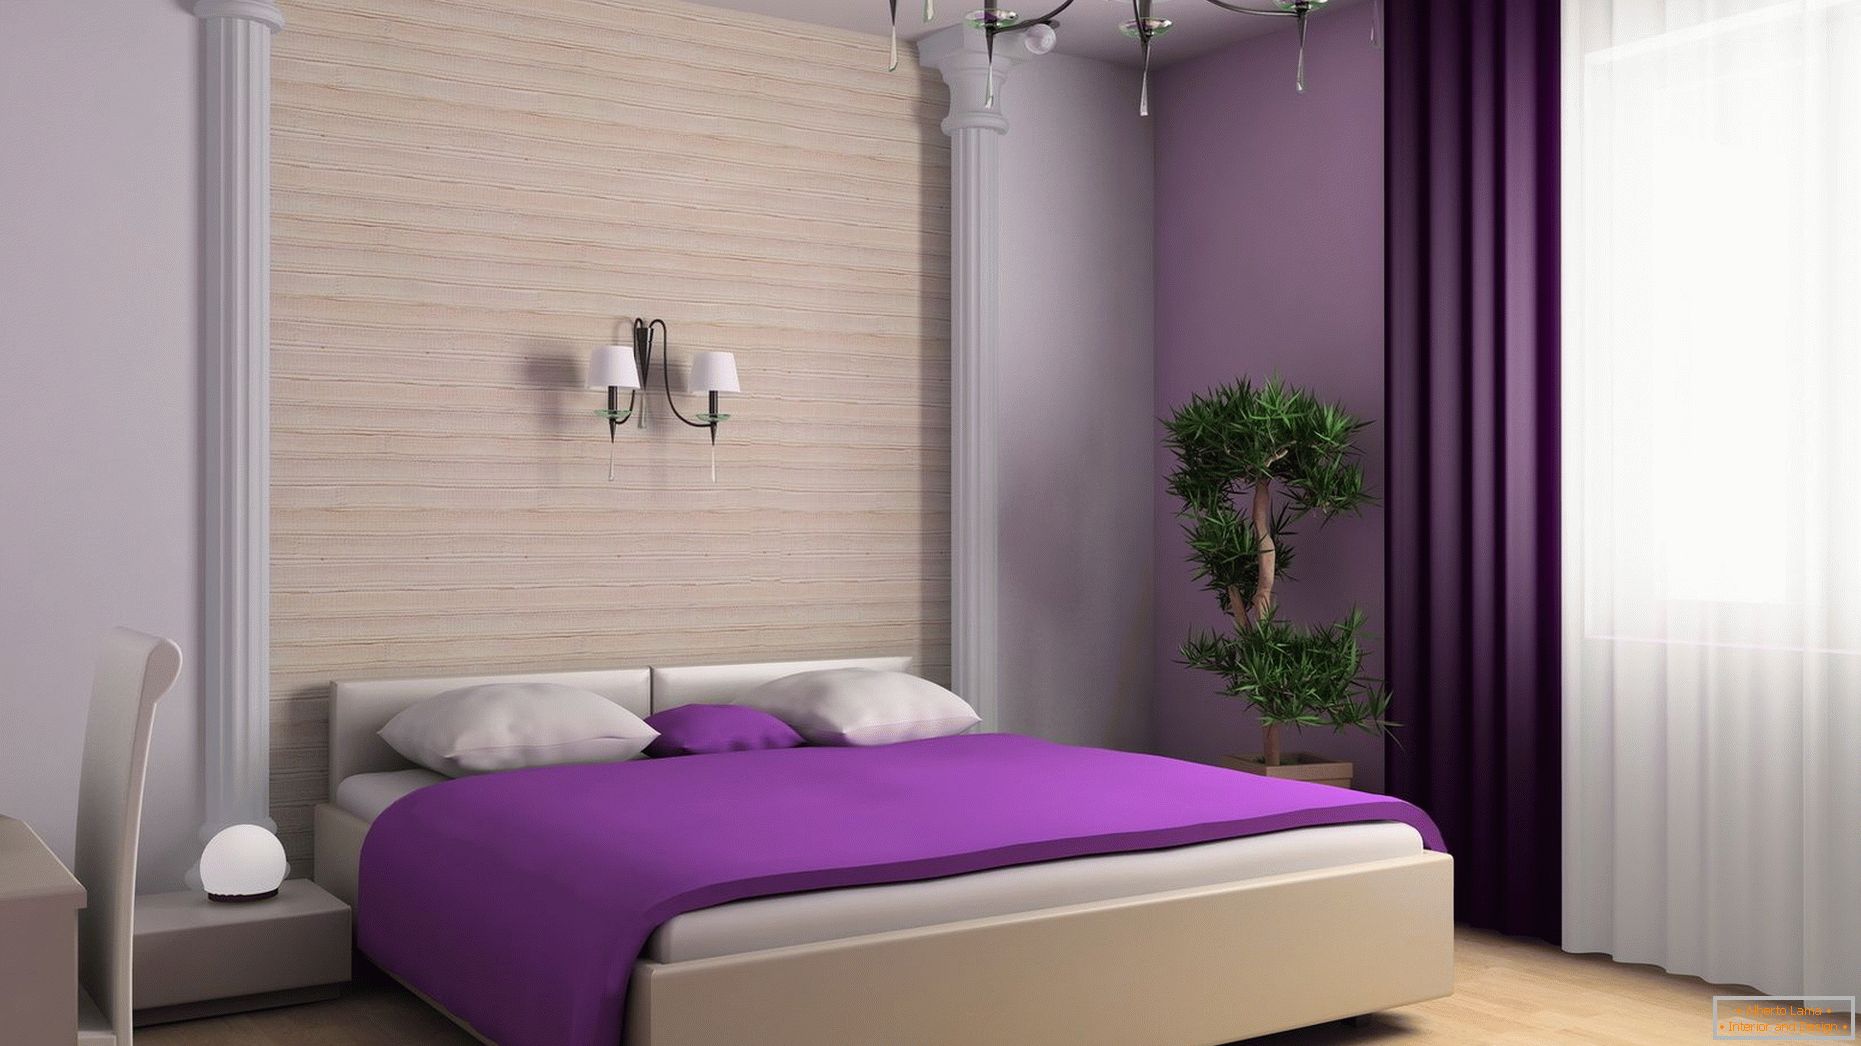 Couverture violette sur le lit